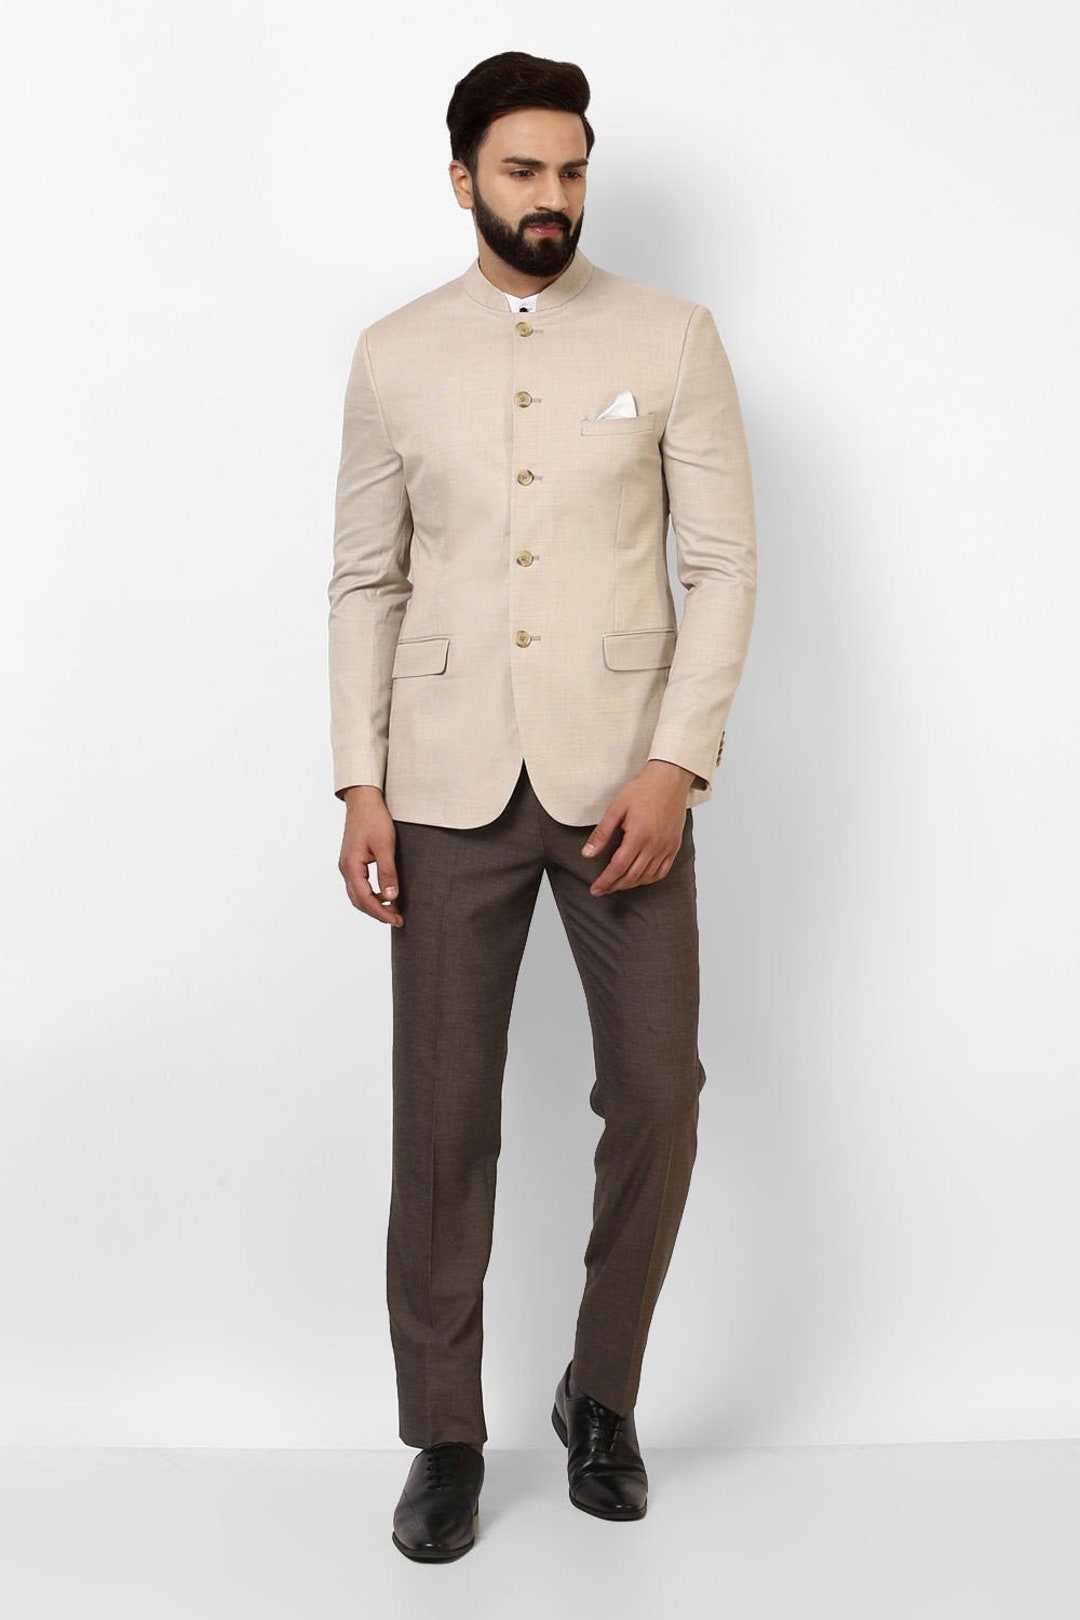 Buy Wintage Men's Pure Linen Cream Suit online